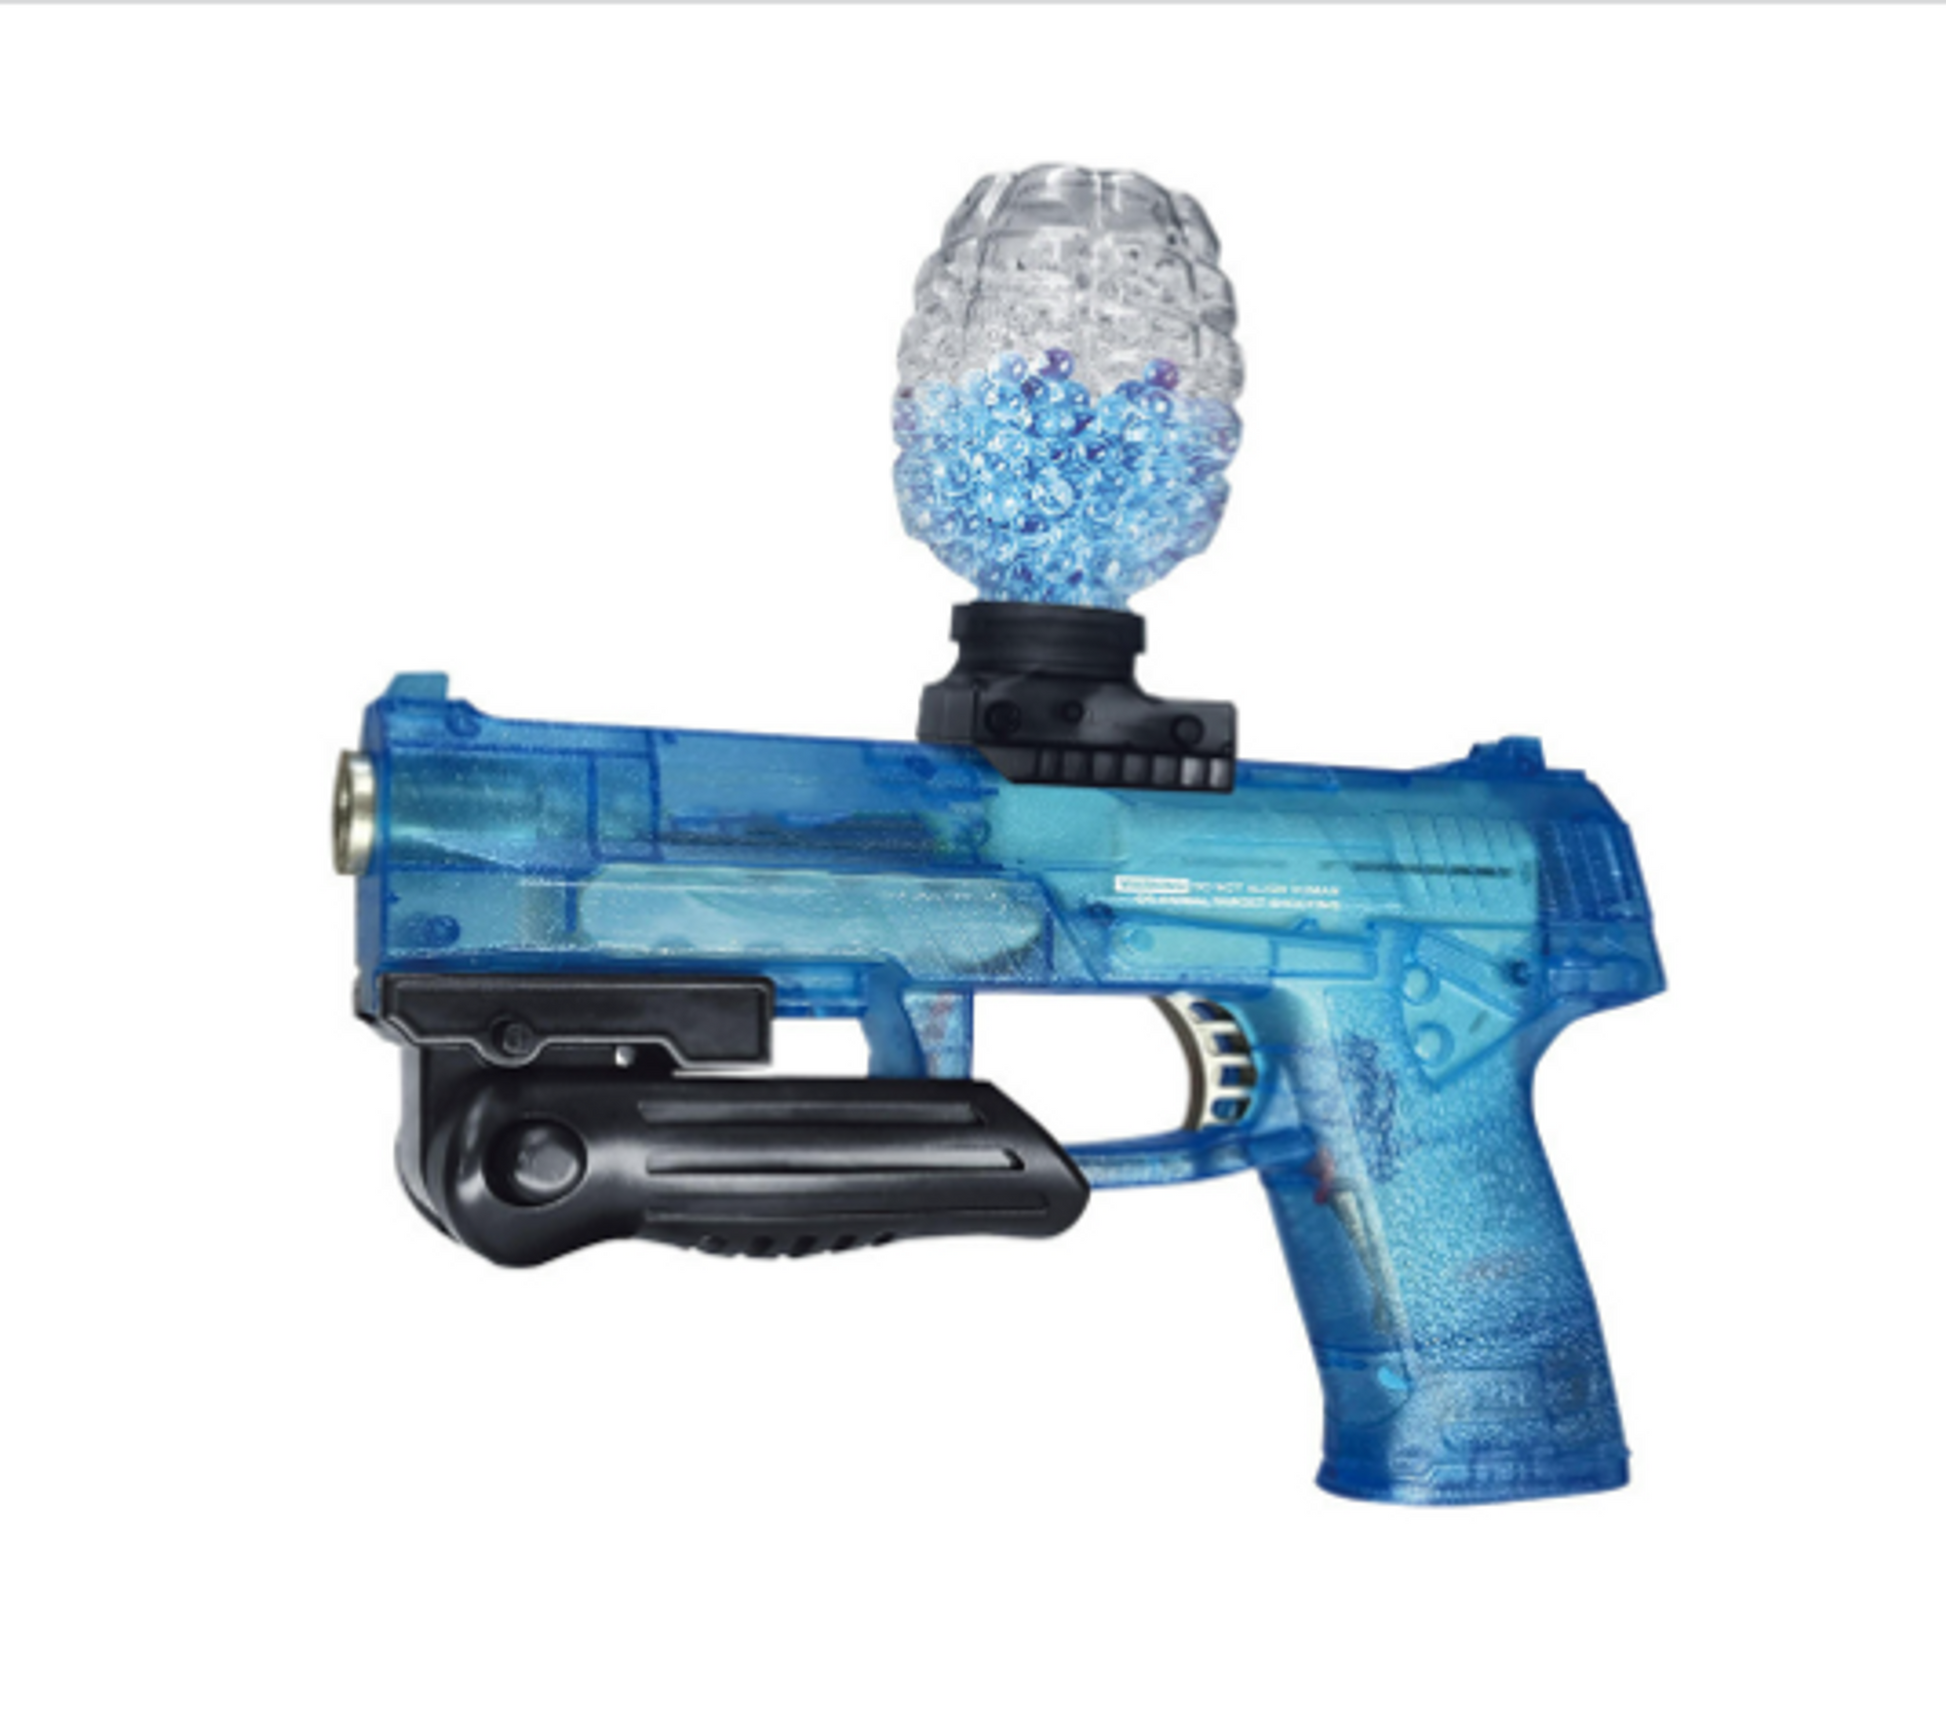 Submachine Water Blaster Toy Gun